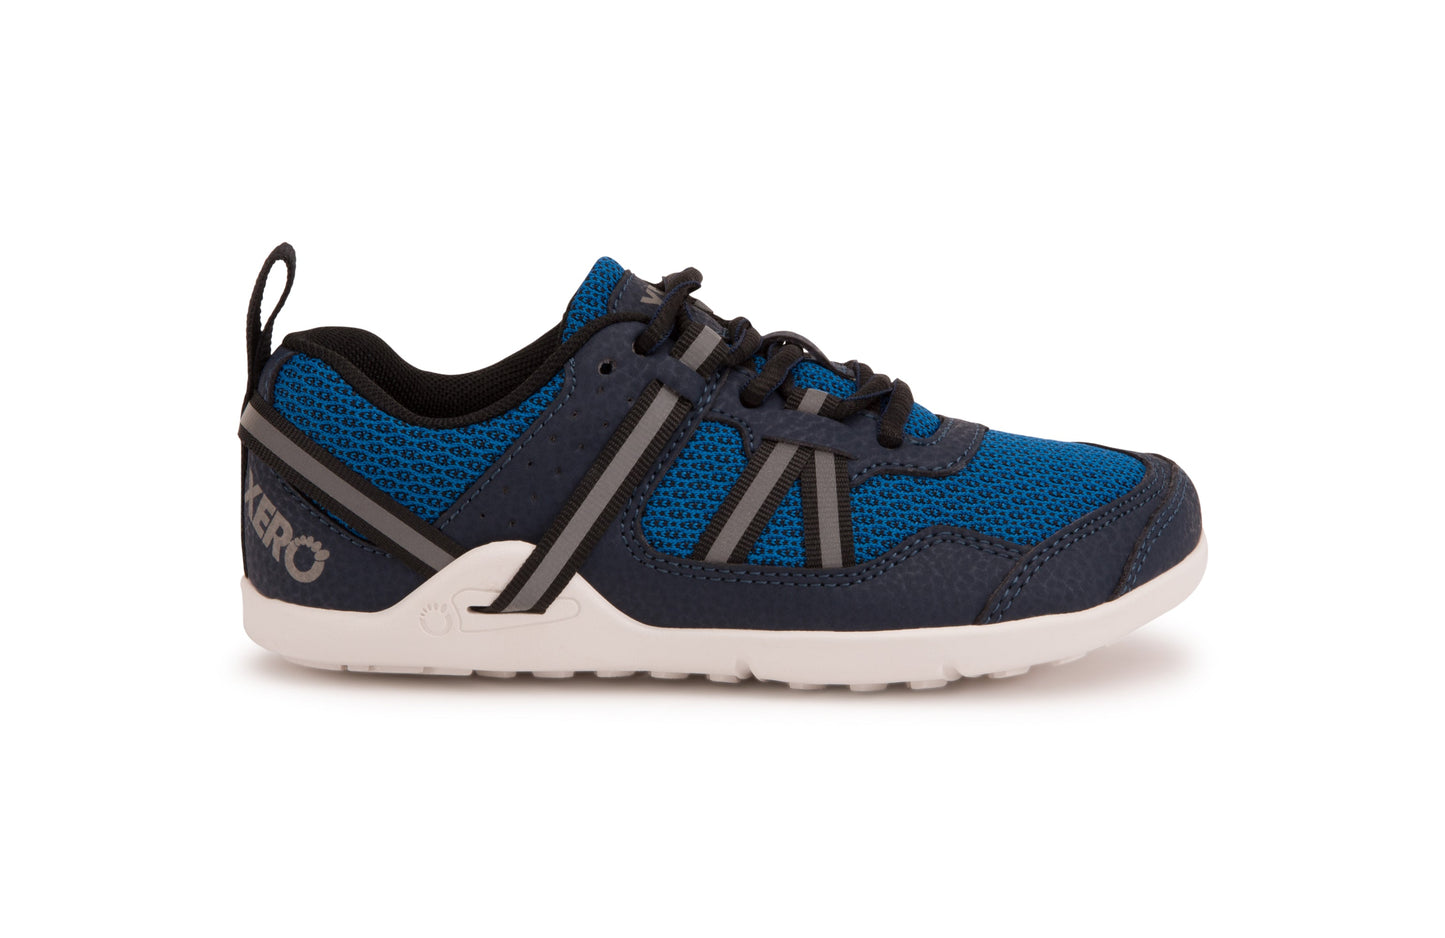 Xero Shoes Prio Kids barfods træningssko/sneakers til børn i farven mykonos blue, yderside